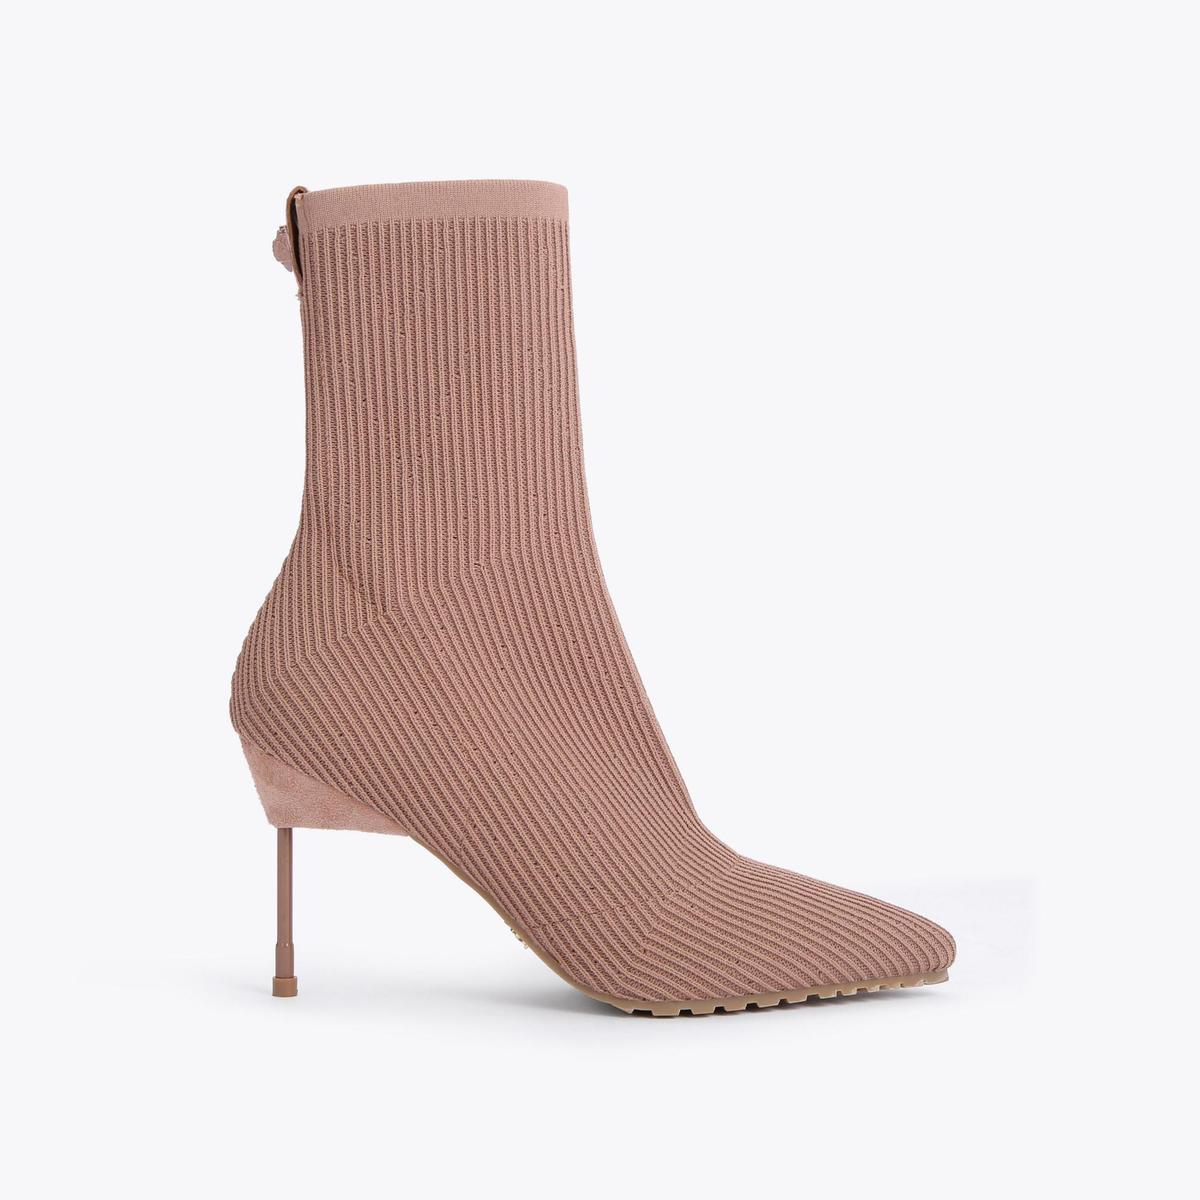 Women's Boots | Ankle & Knee High, Flat & Heeled | Kurt Geiger